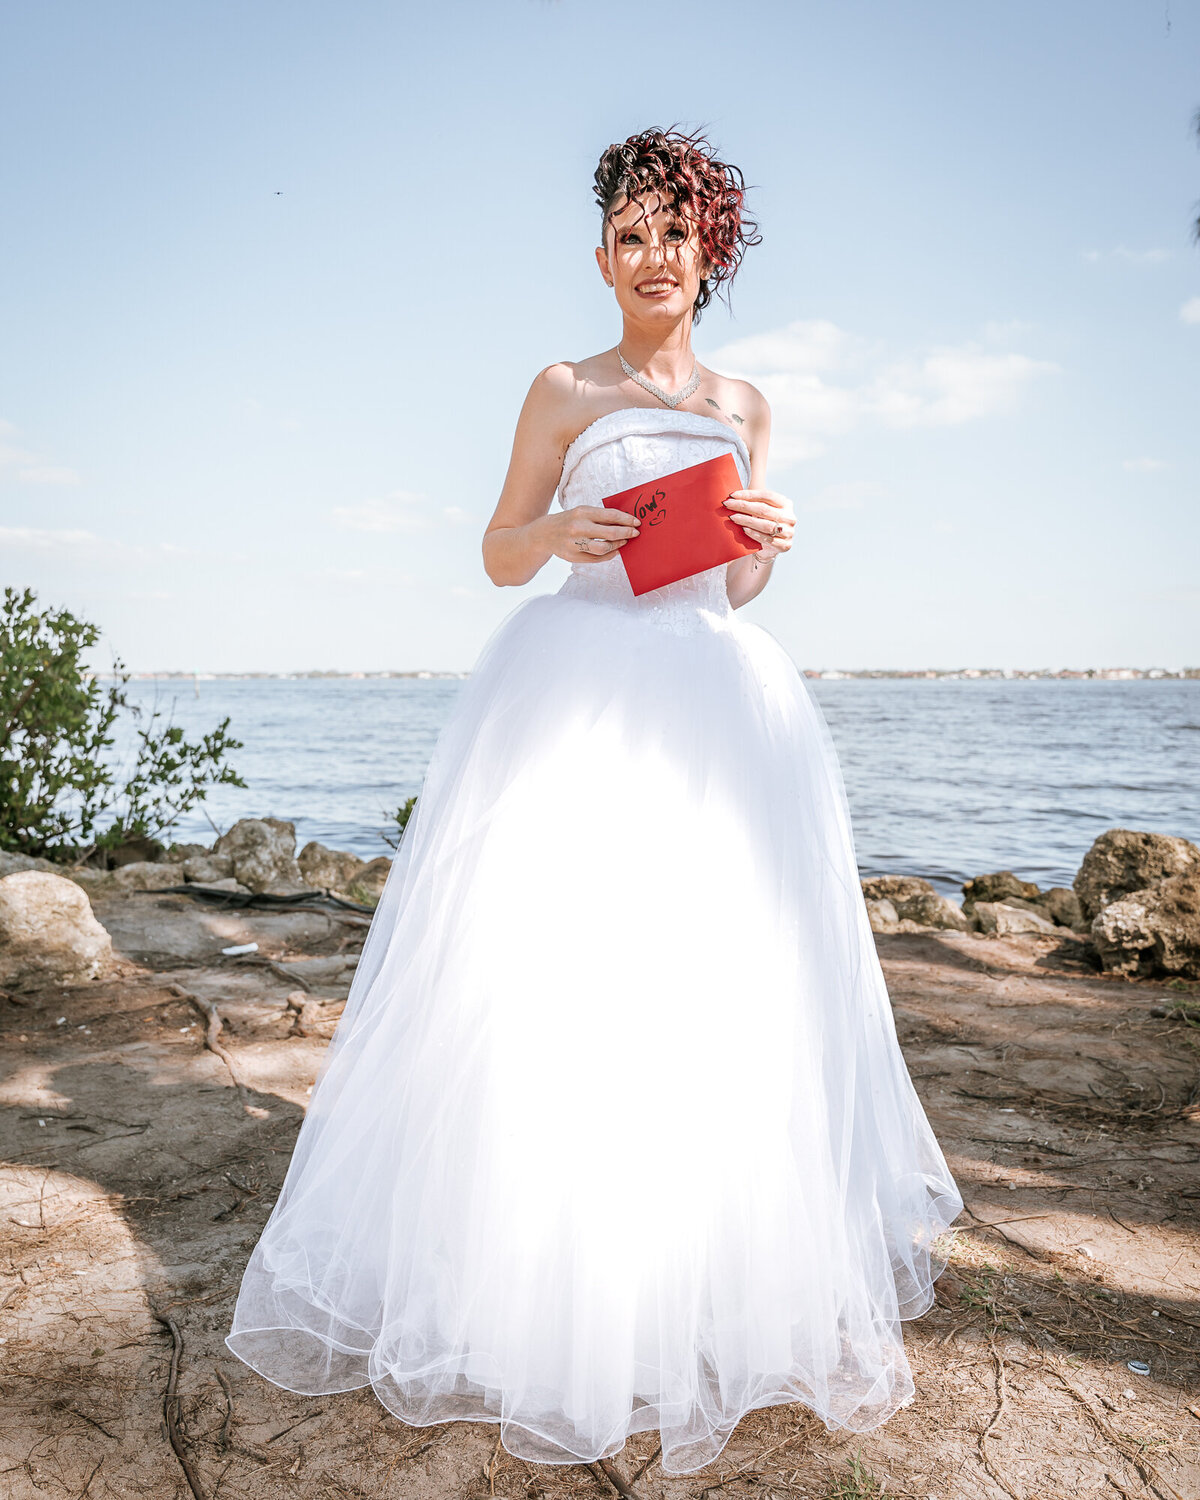 Southwest Florida wedding photographers - Fort Myers Wedding Photographer -6